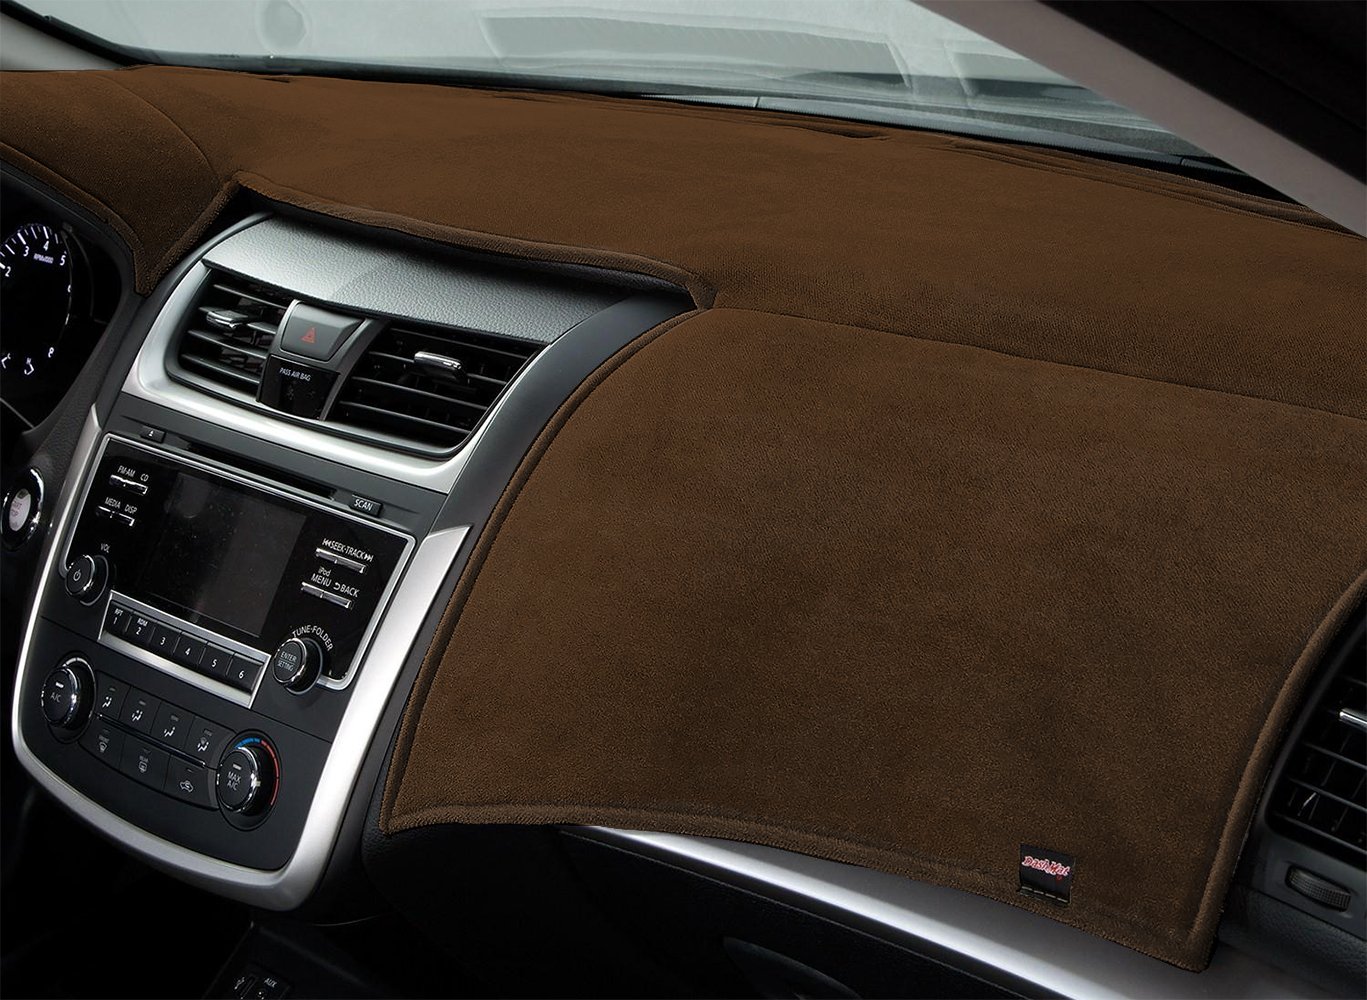 DashMat Original Dashboard Cover Acura Integra (Premium Carpet, Black) - 3